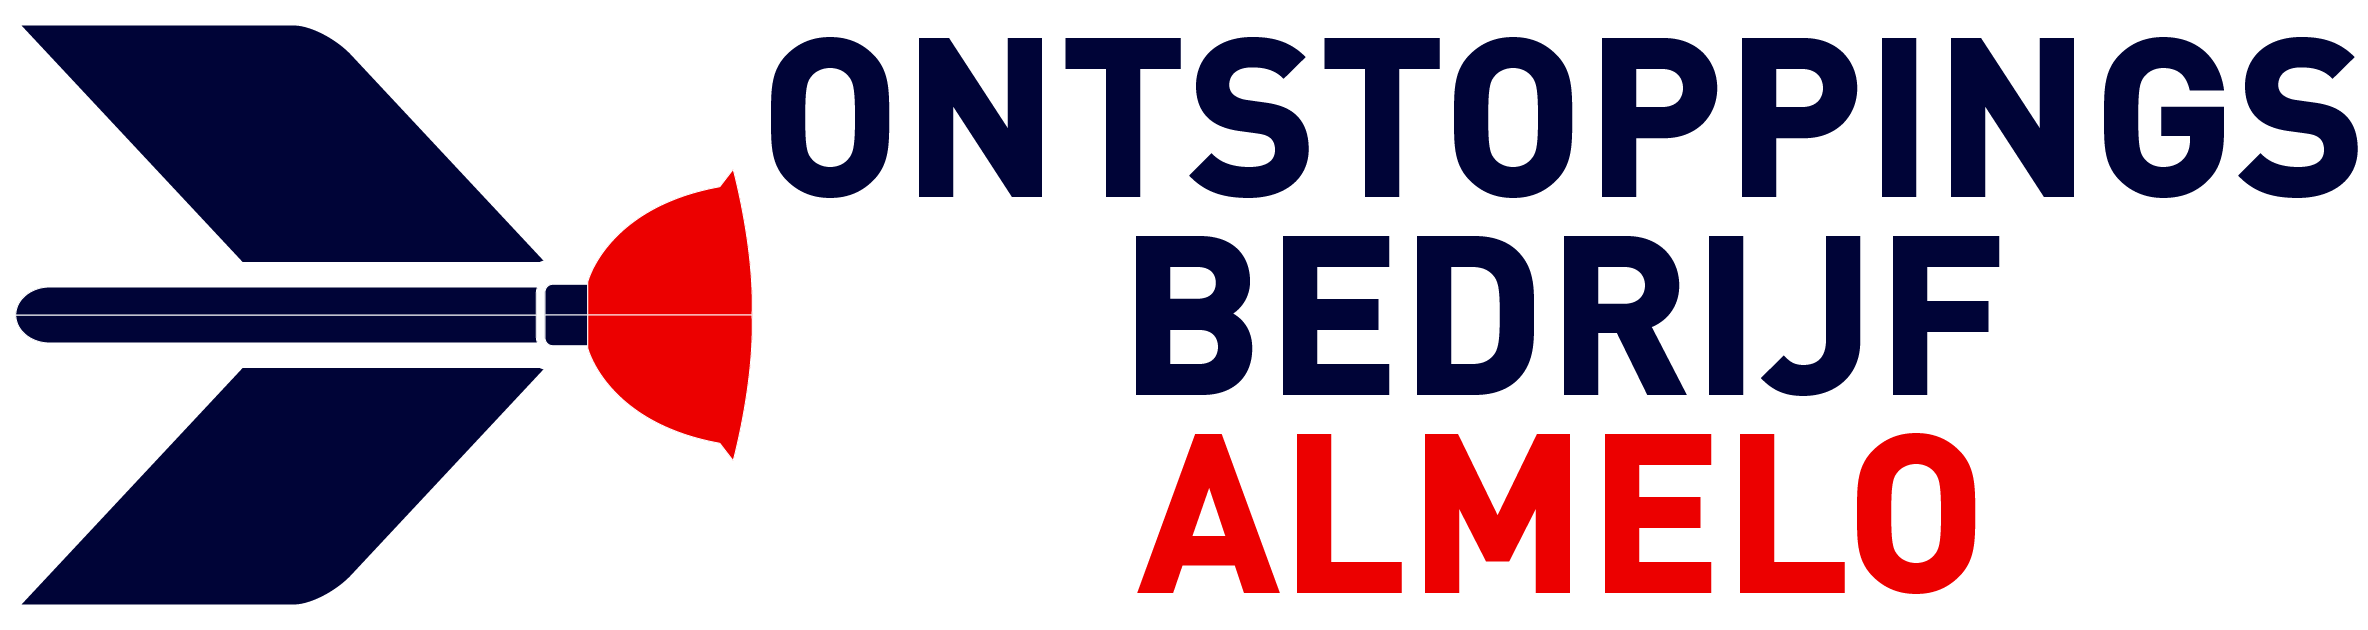 Ontstoppingsbedrijf Almelo logo